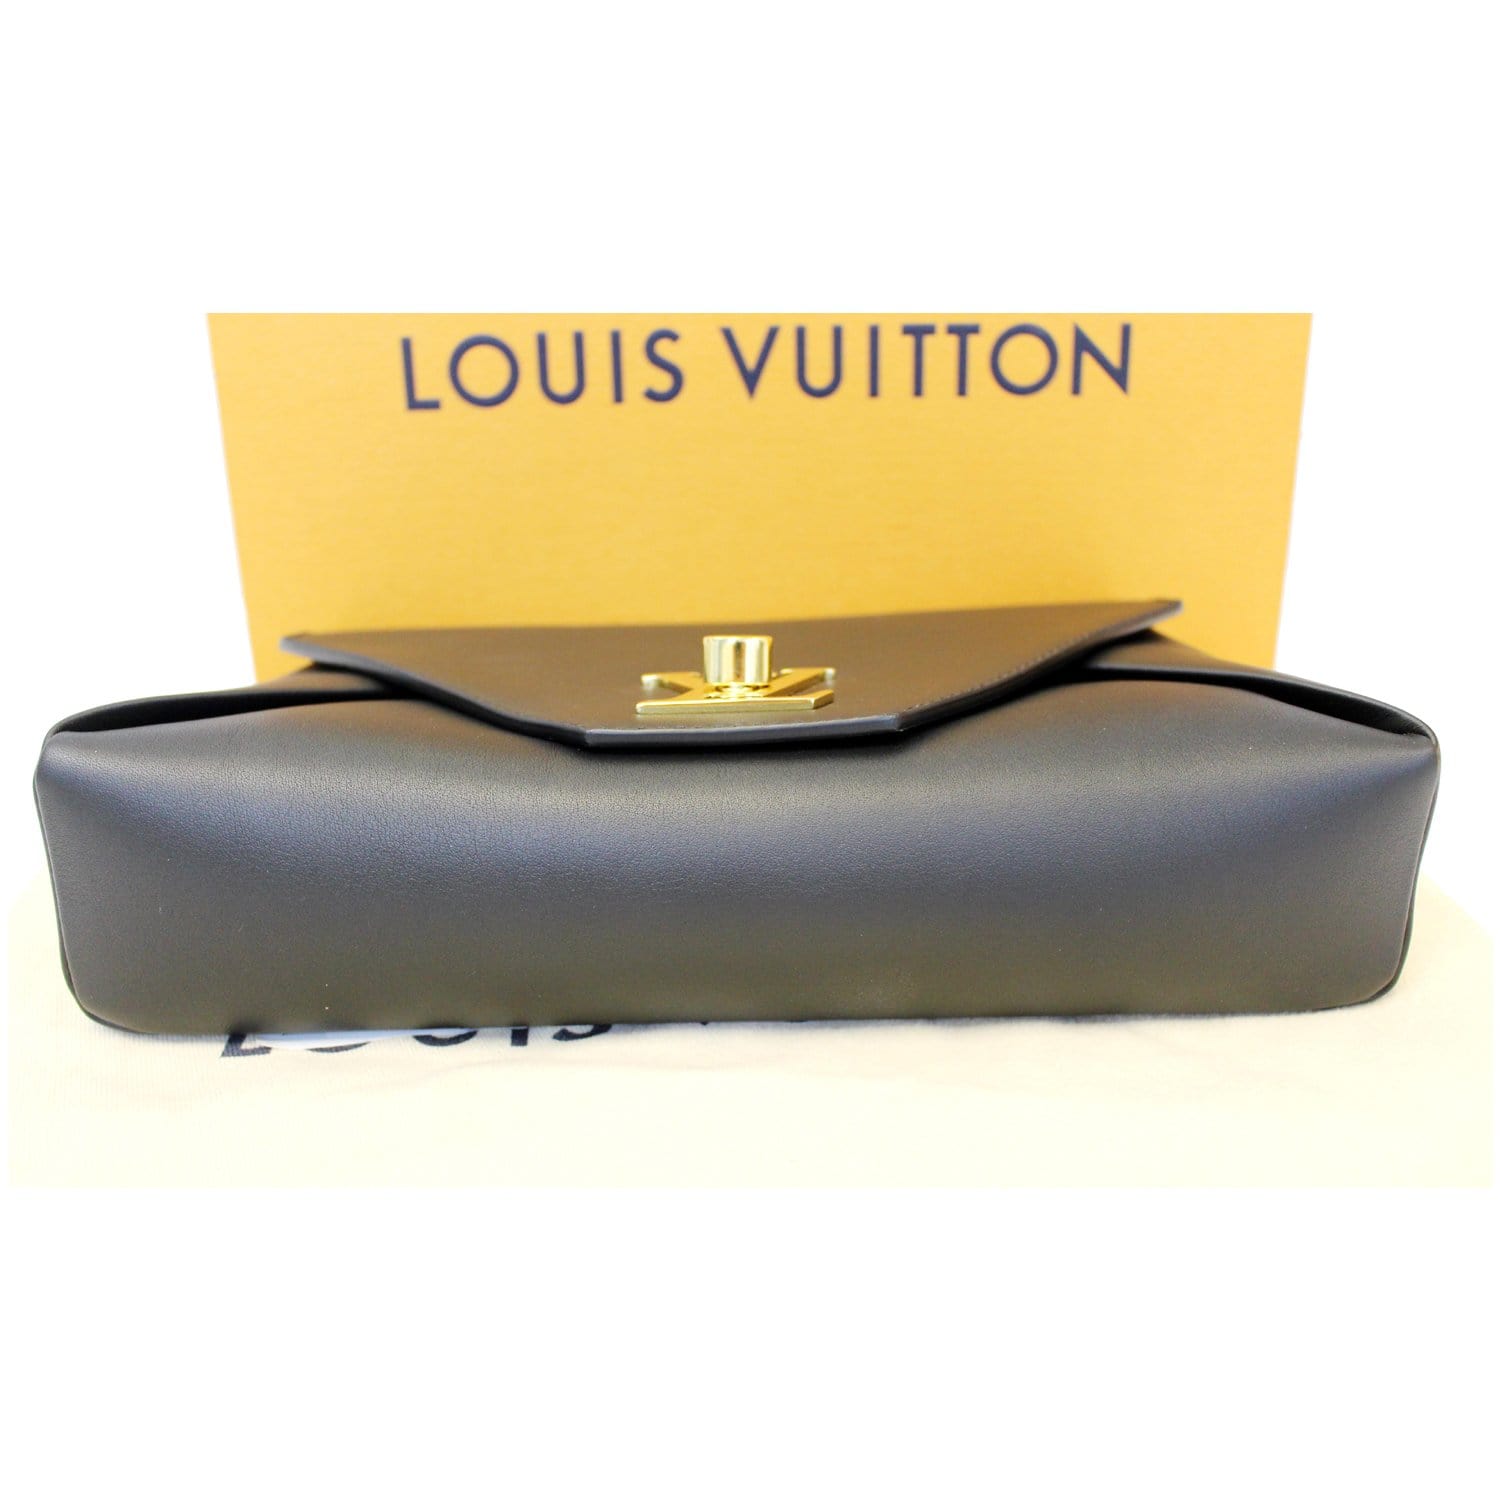 Louis Vuitton, Bags, Louis Vuitton Love Note